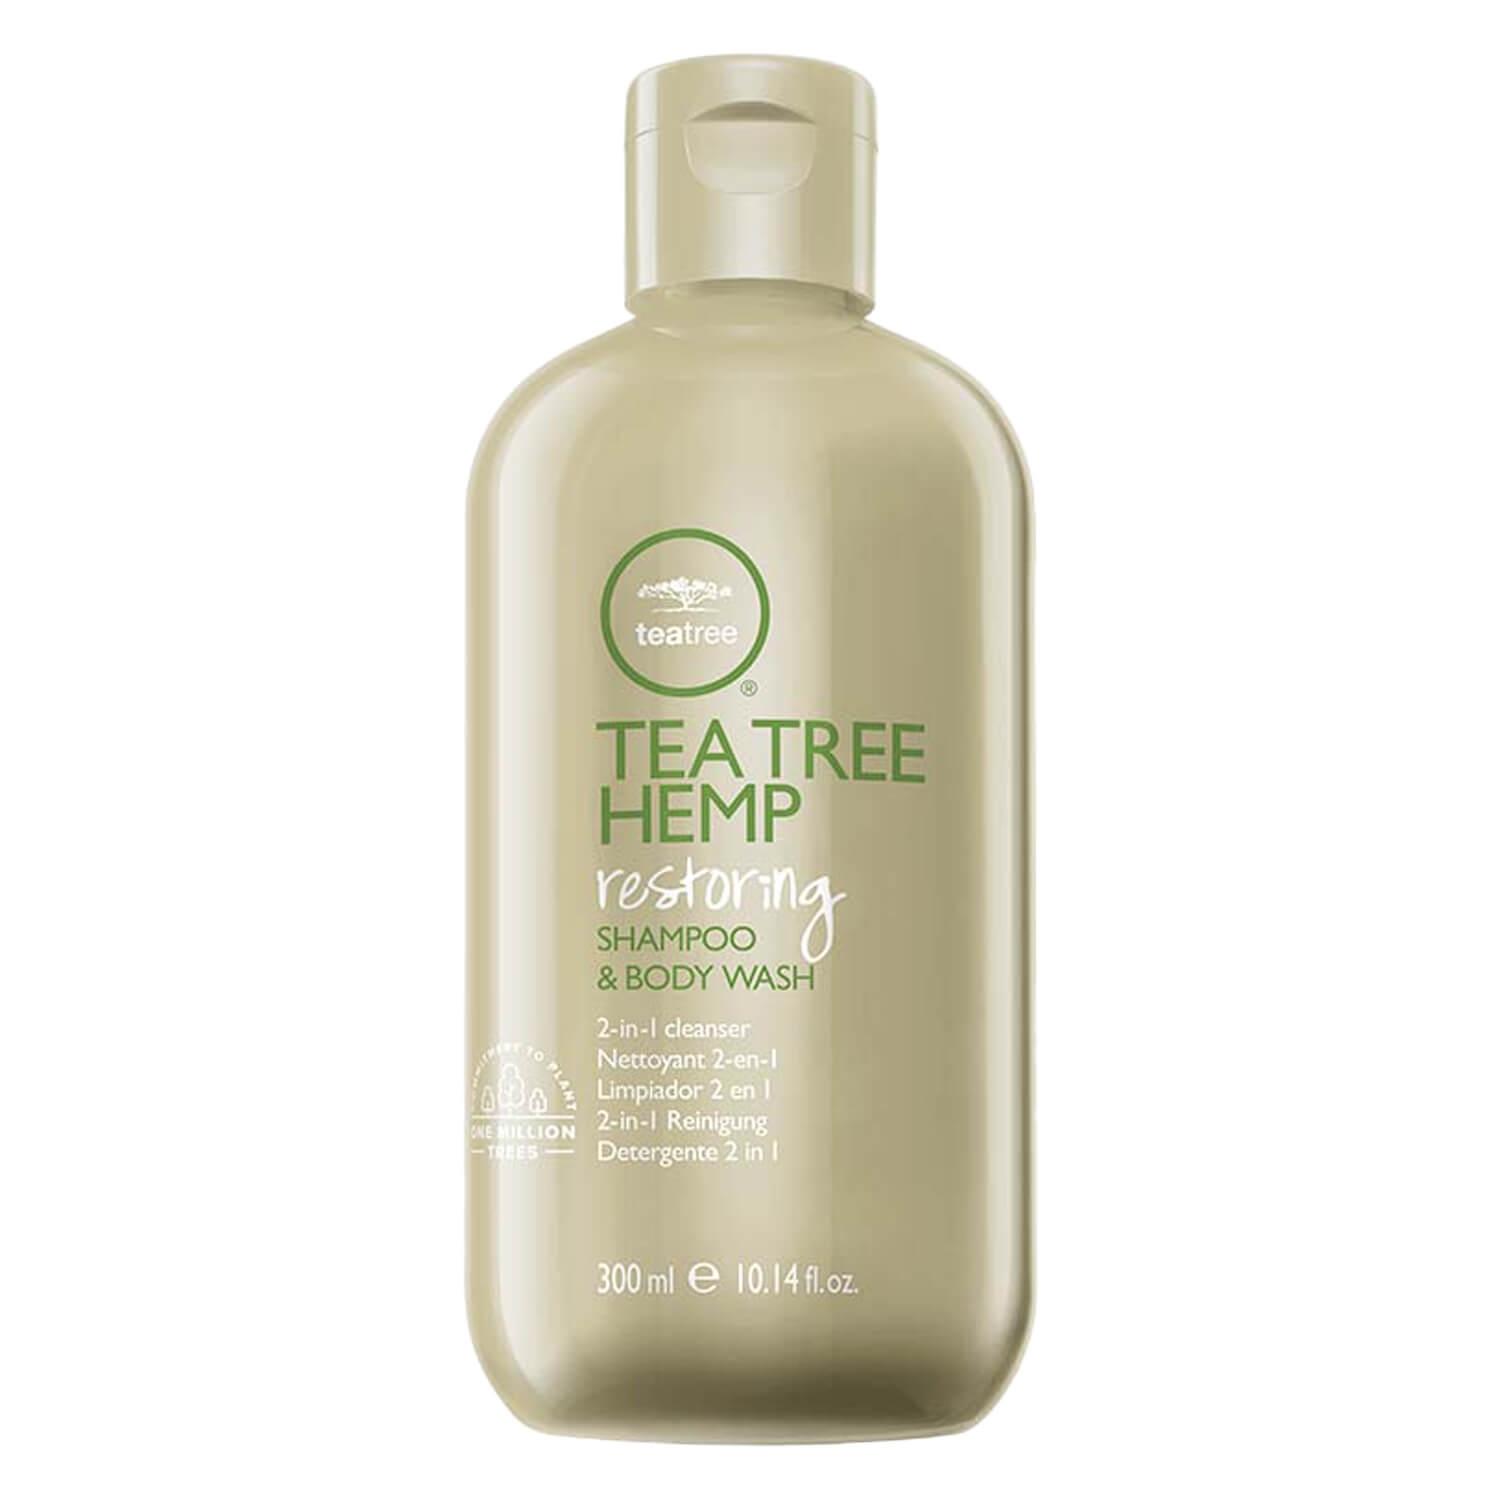 Produktbild von Tea Tree Hemp - Shampoo and Body Wash